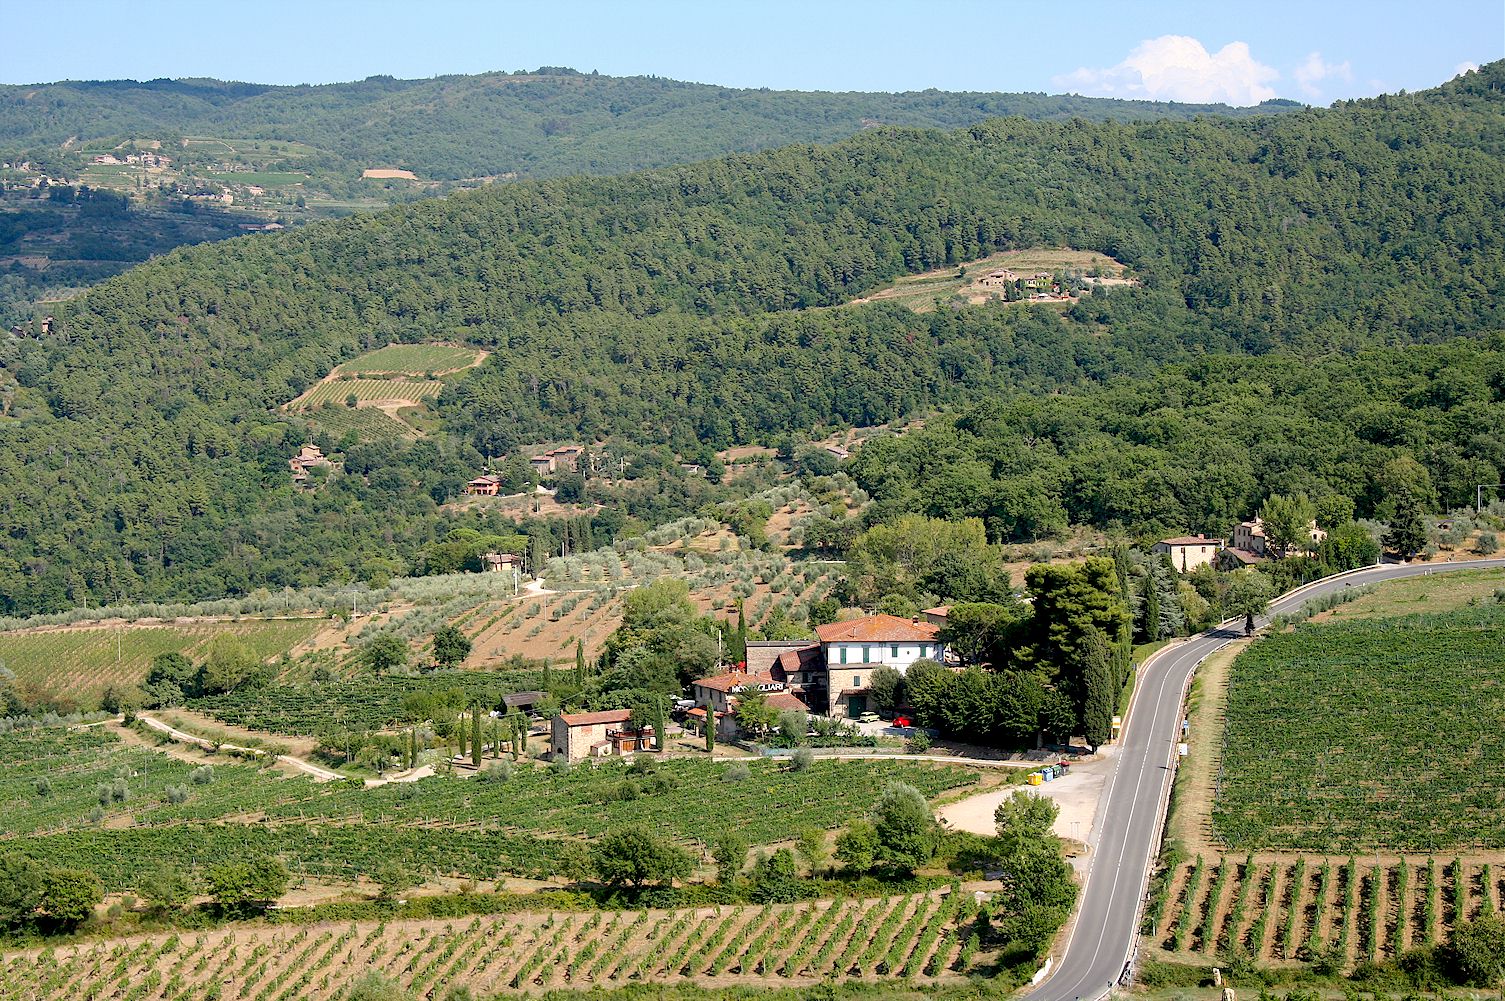 Chiantigiana highway to Panzano in Chianti